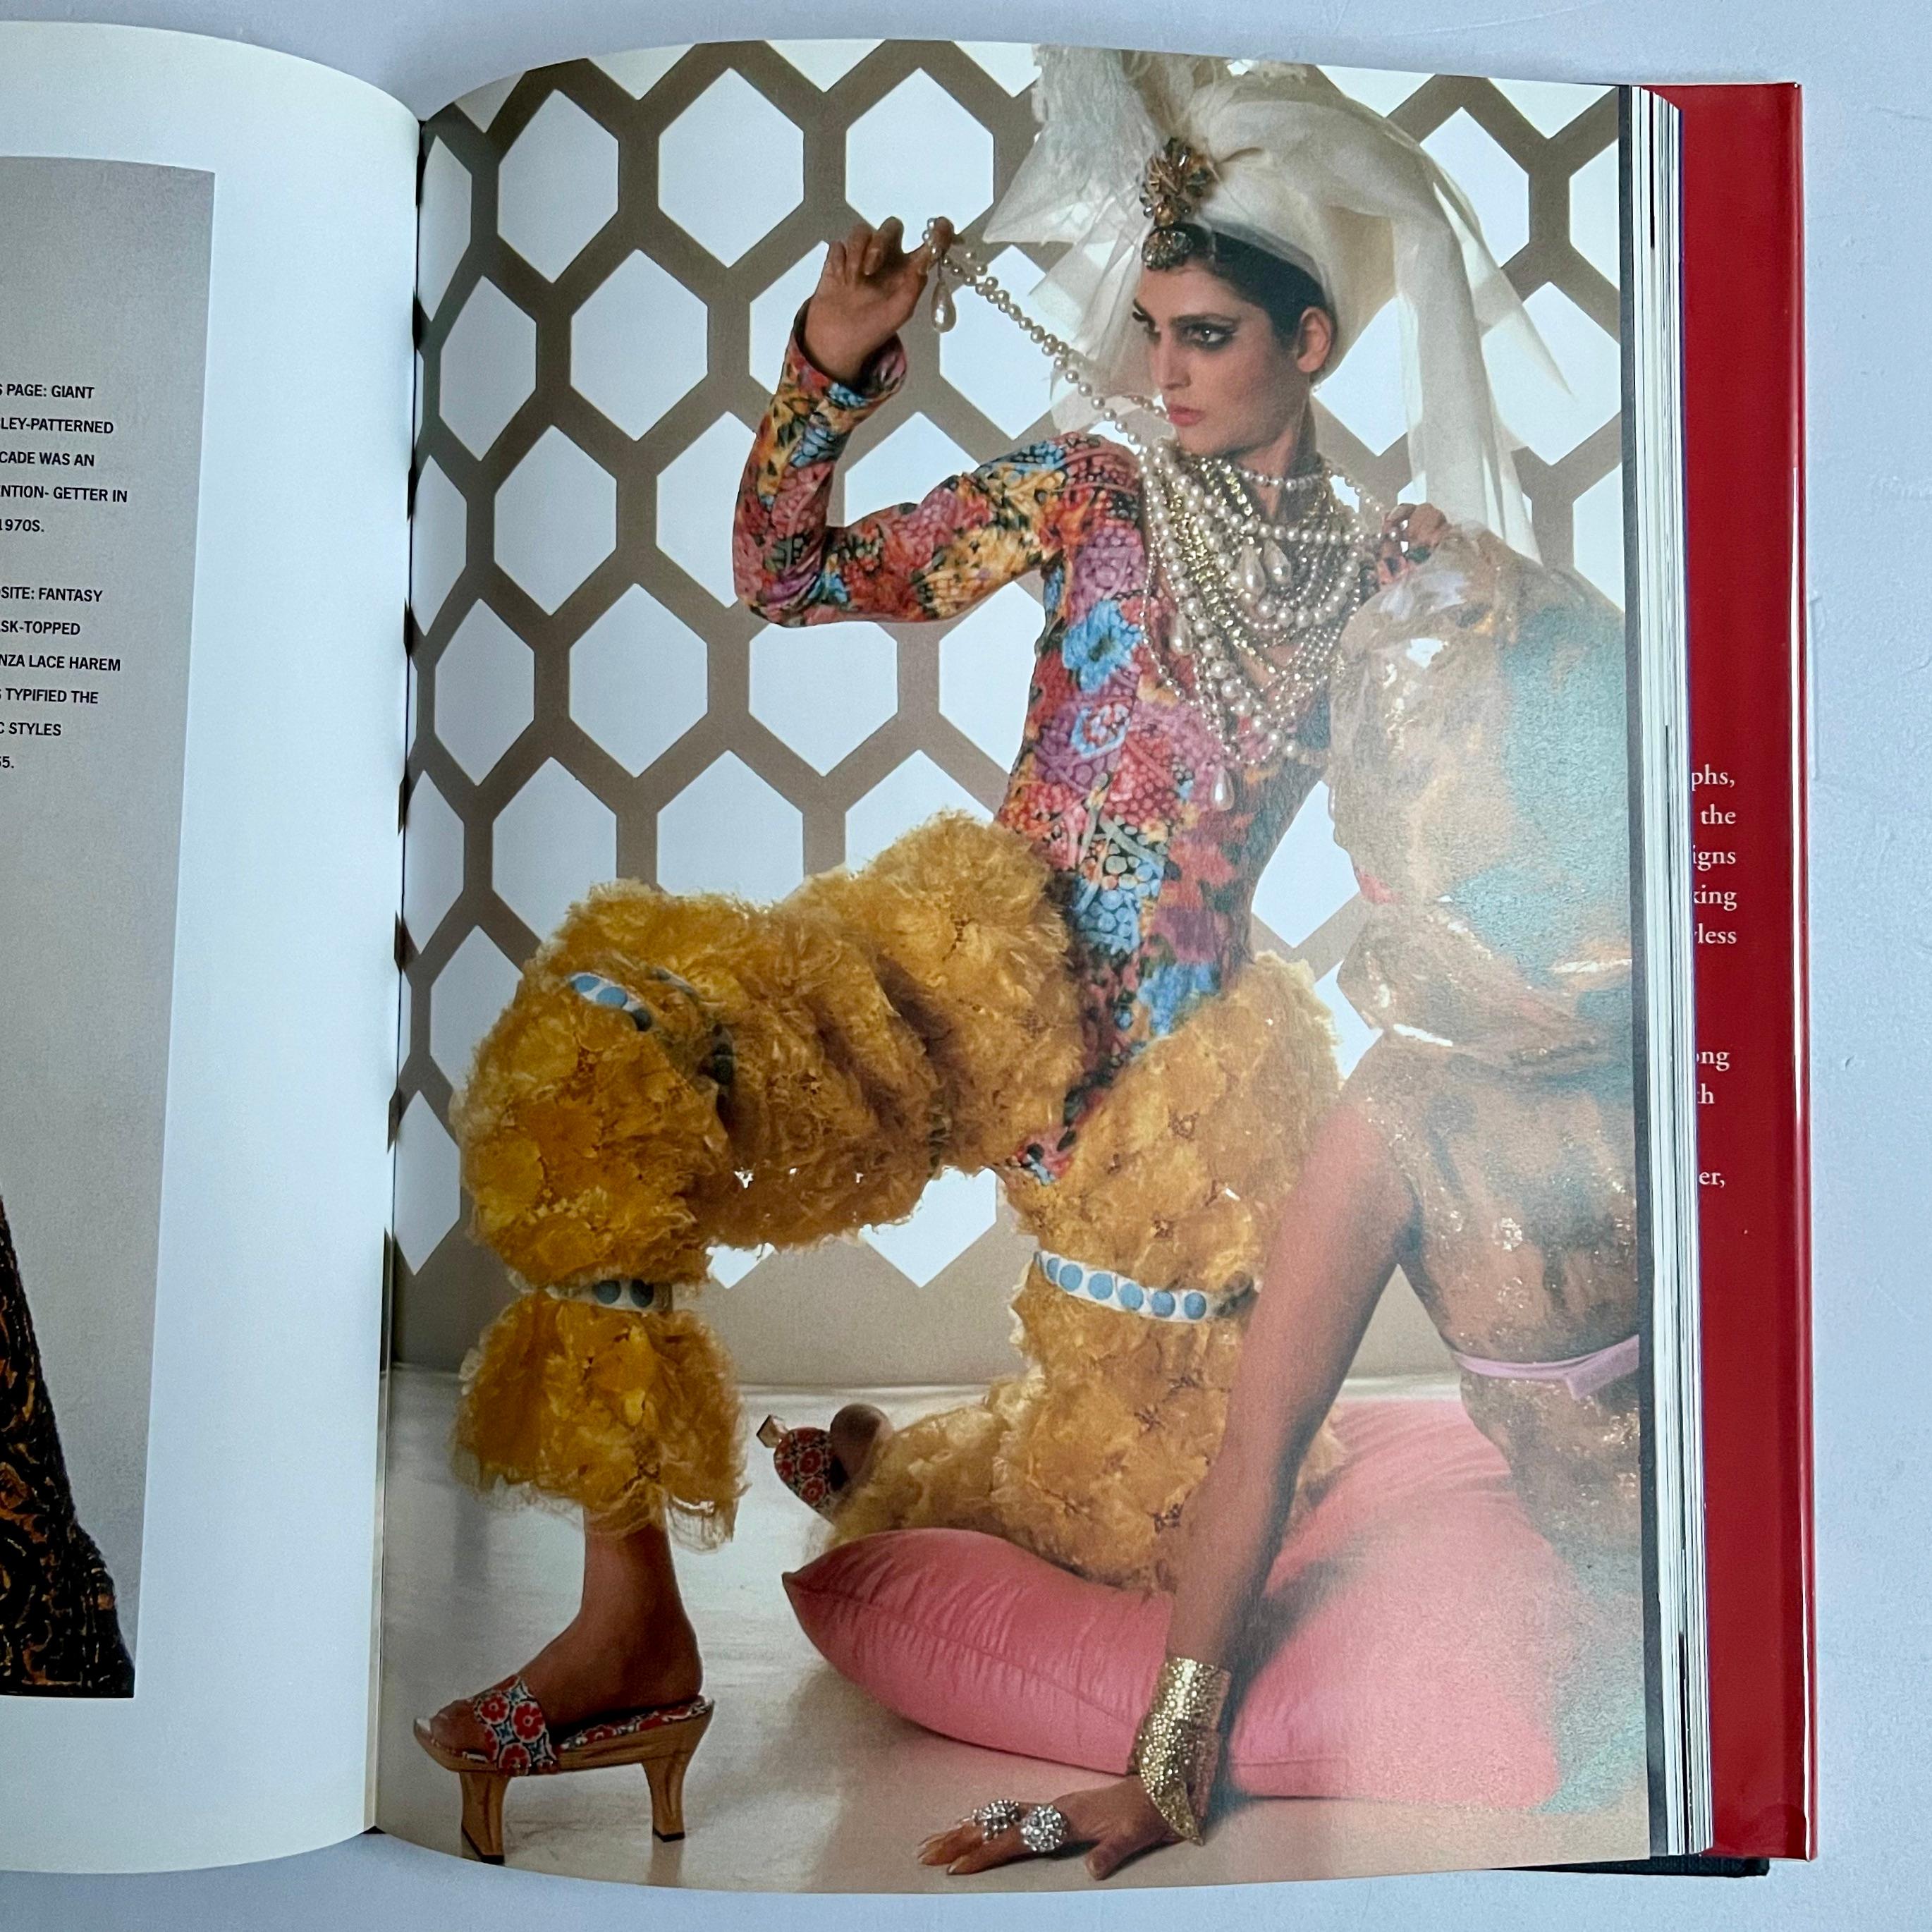 Publié par Rizzoli, 1ère édition, 1996

Scaasi était connu pour ses costumes impeccablement taillés, ses tenues de soirée glamour et ses robes de cocktail ornées de plumes, de fourrure, de paillettes ou de broderies fines, ainsi que pour sa